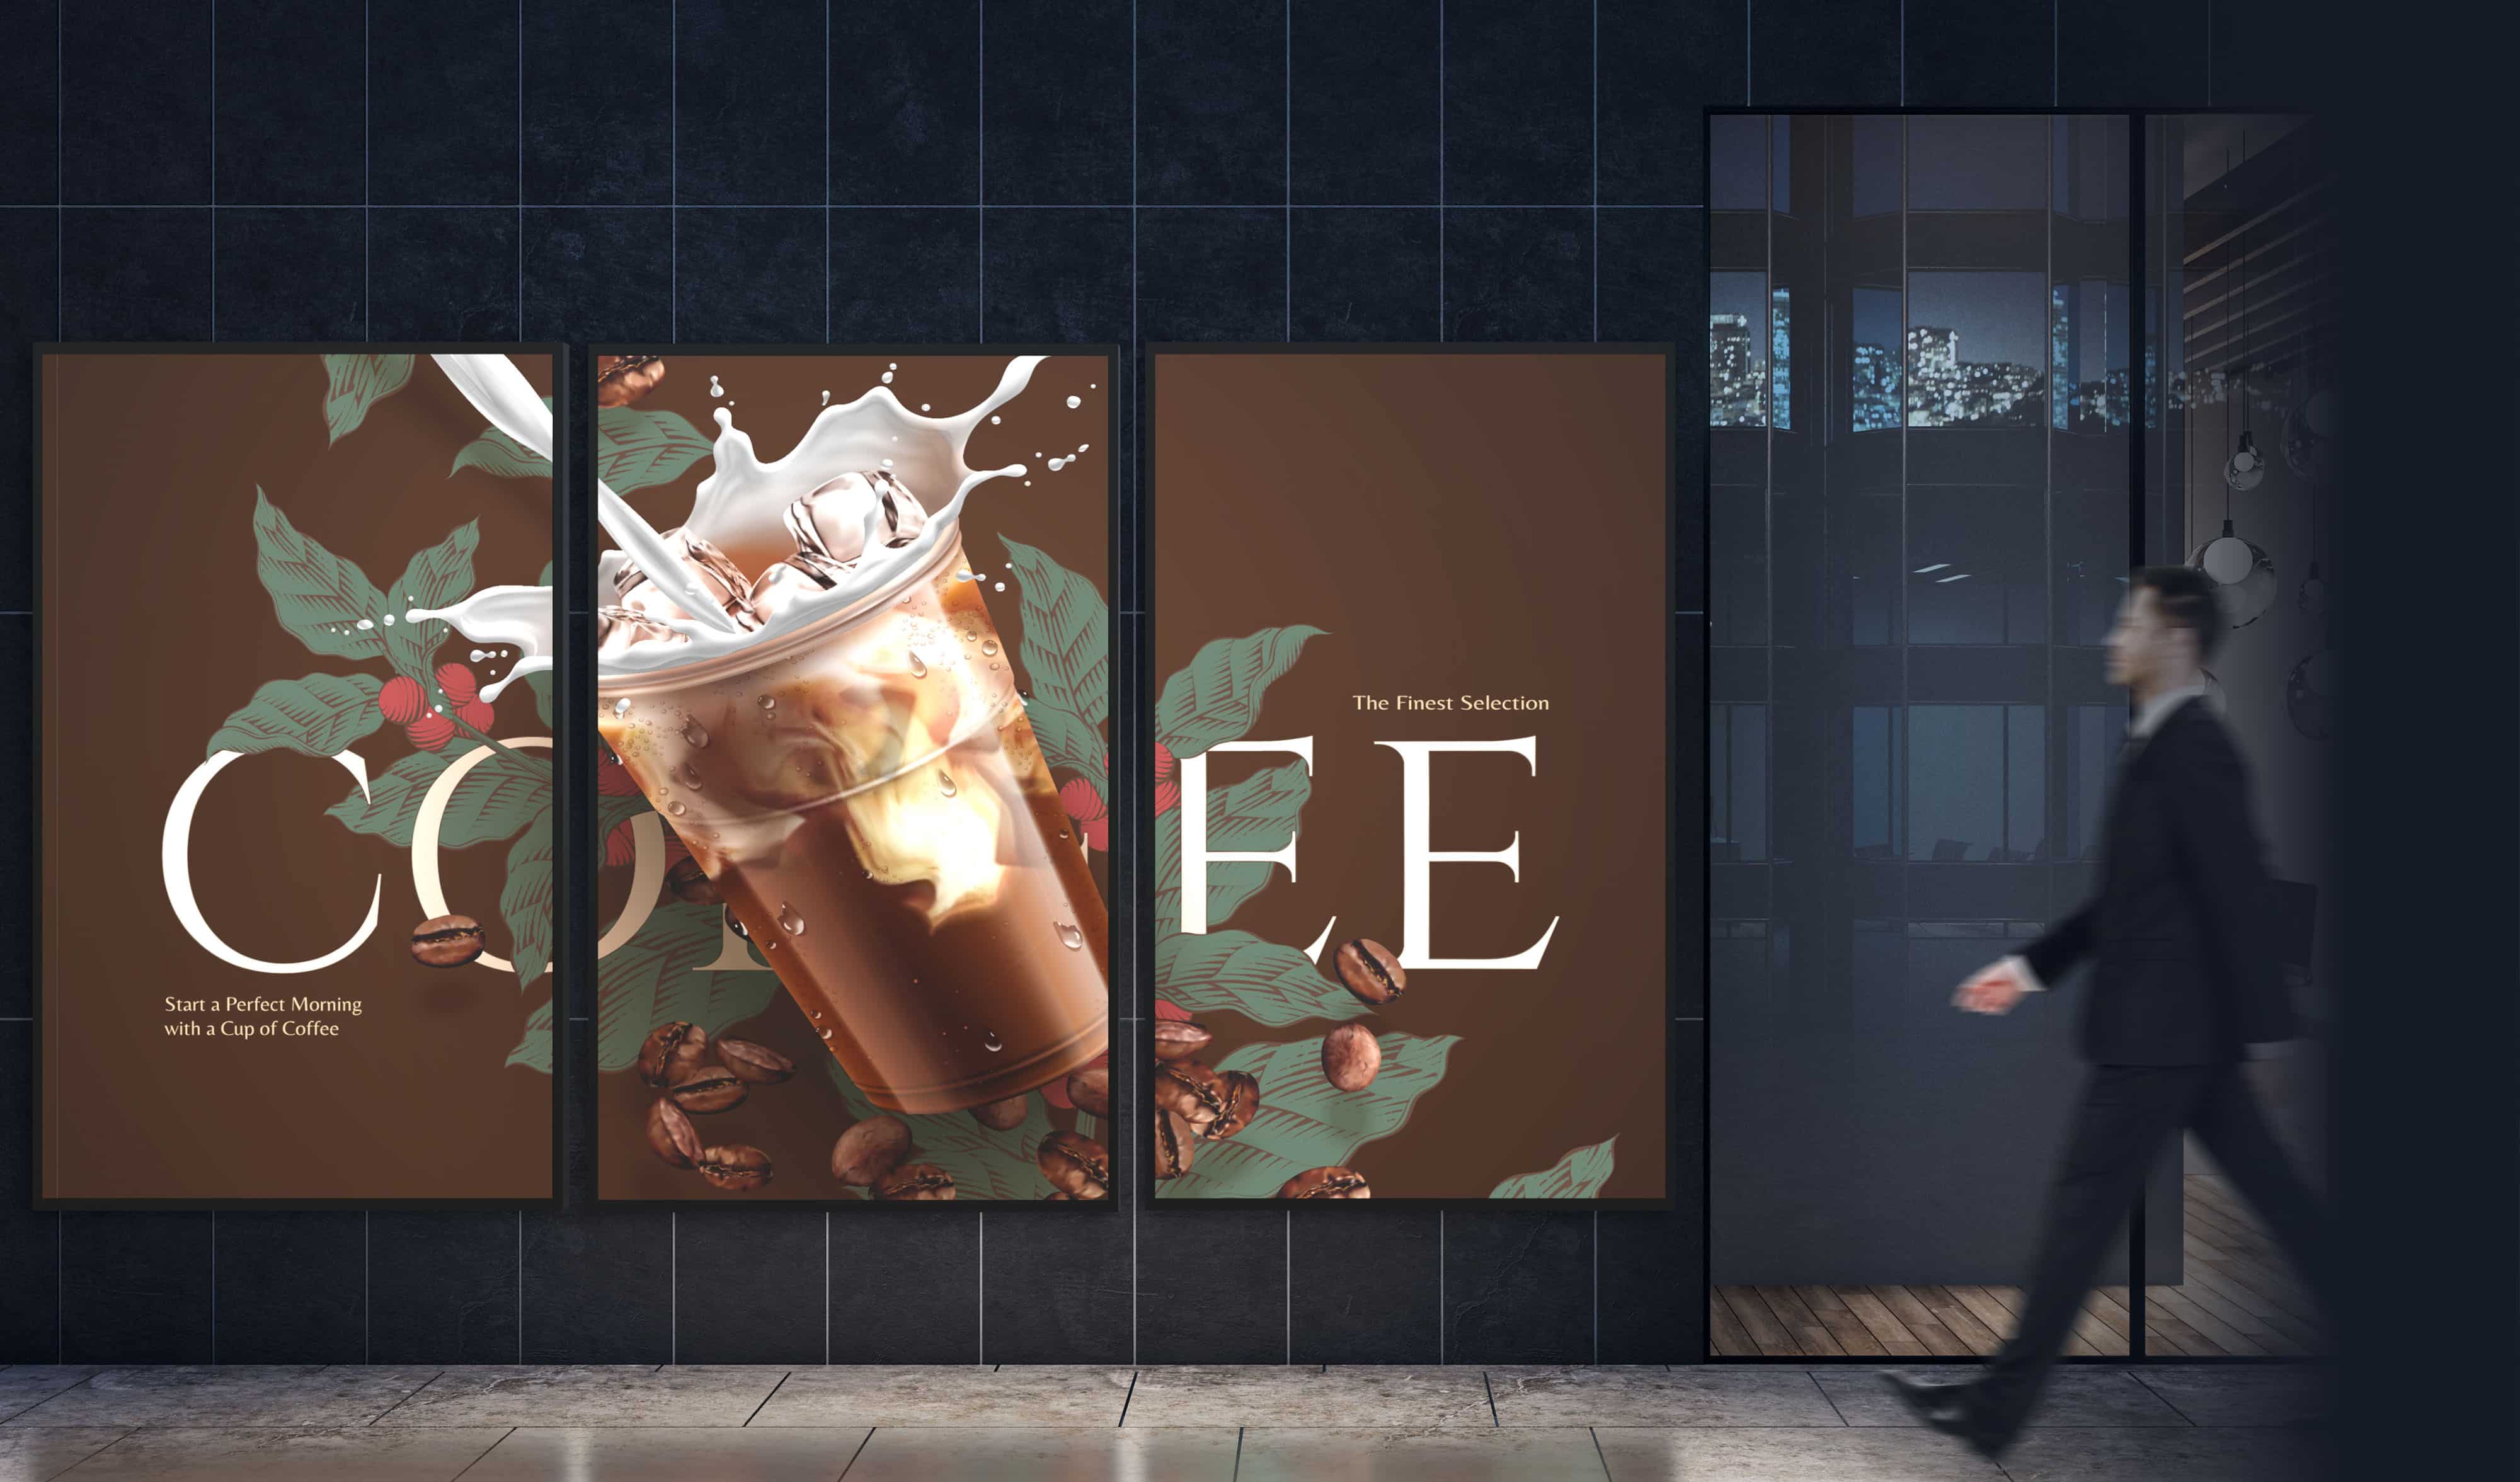 Osoba przechodzi obok digital signage składającego się z trzech wyświetlaczy serii N, wyświetlających jedną reklamę napoju kawowego na trzech wyświetlaczach.